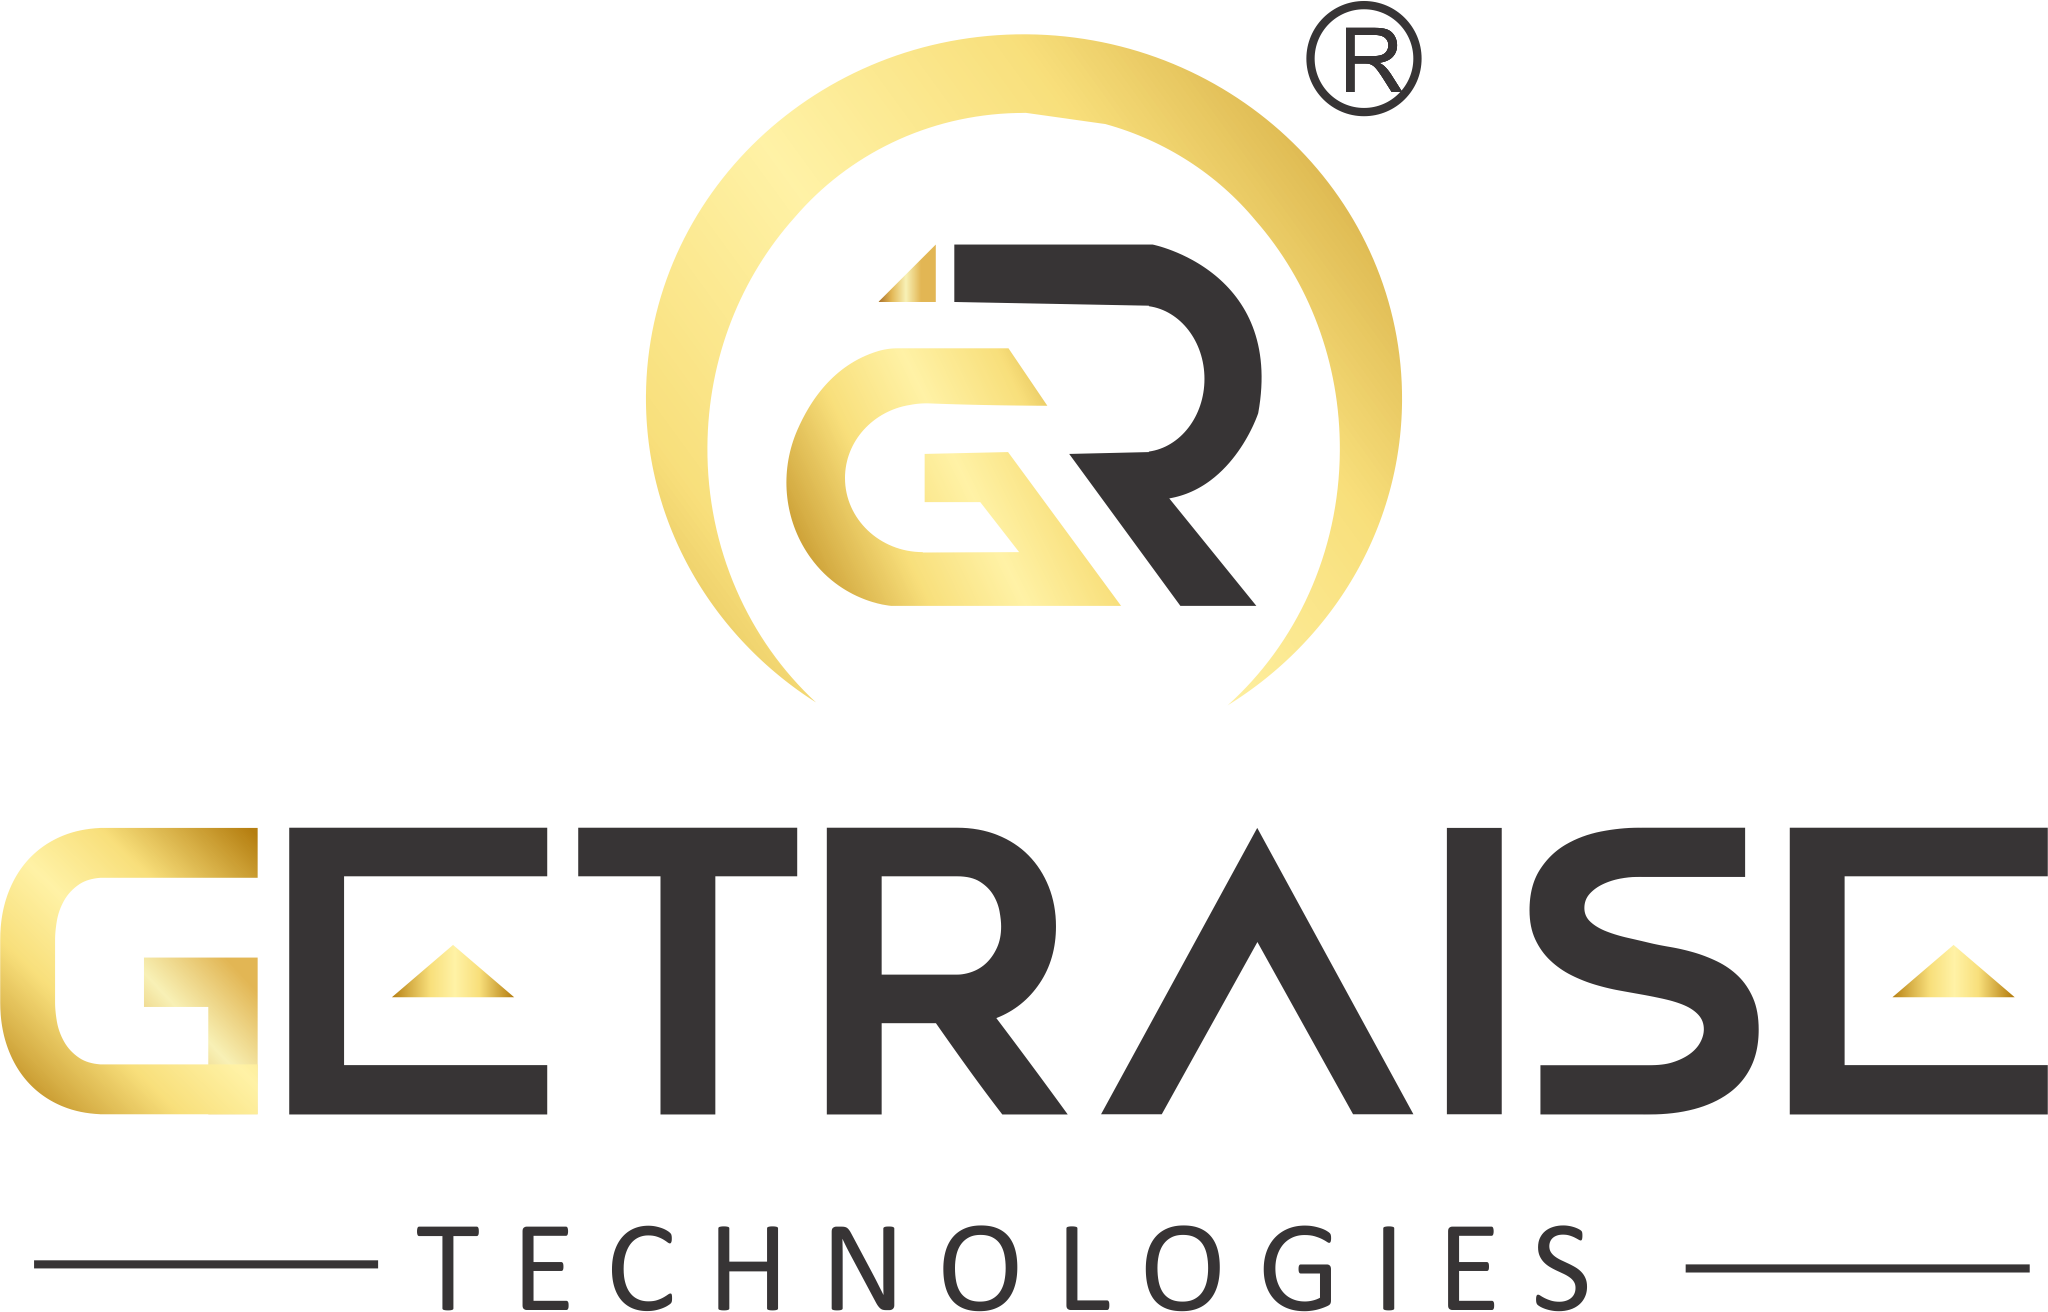 Getraise Technologies